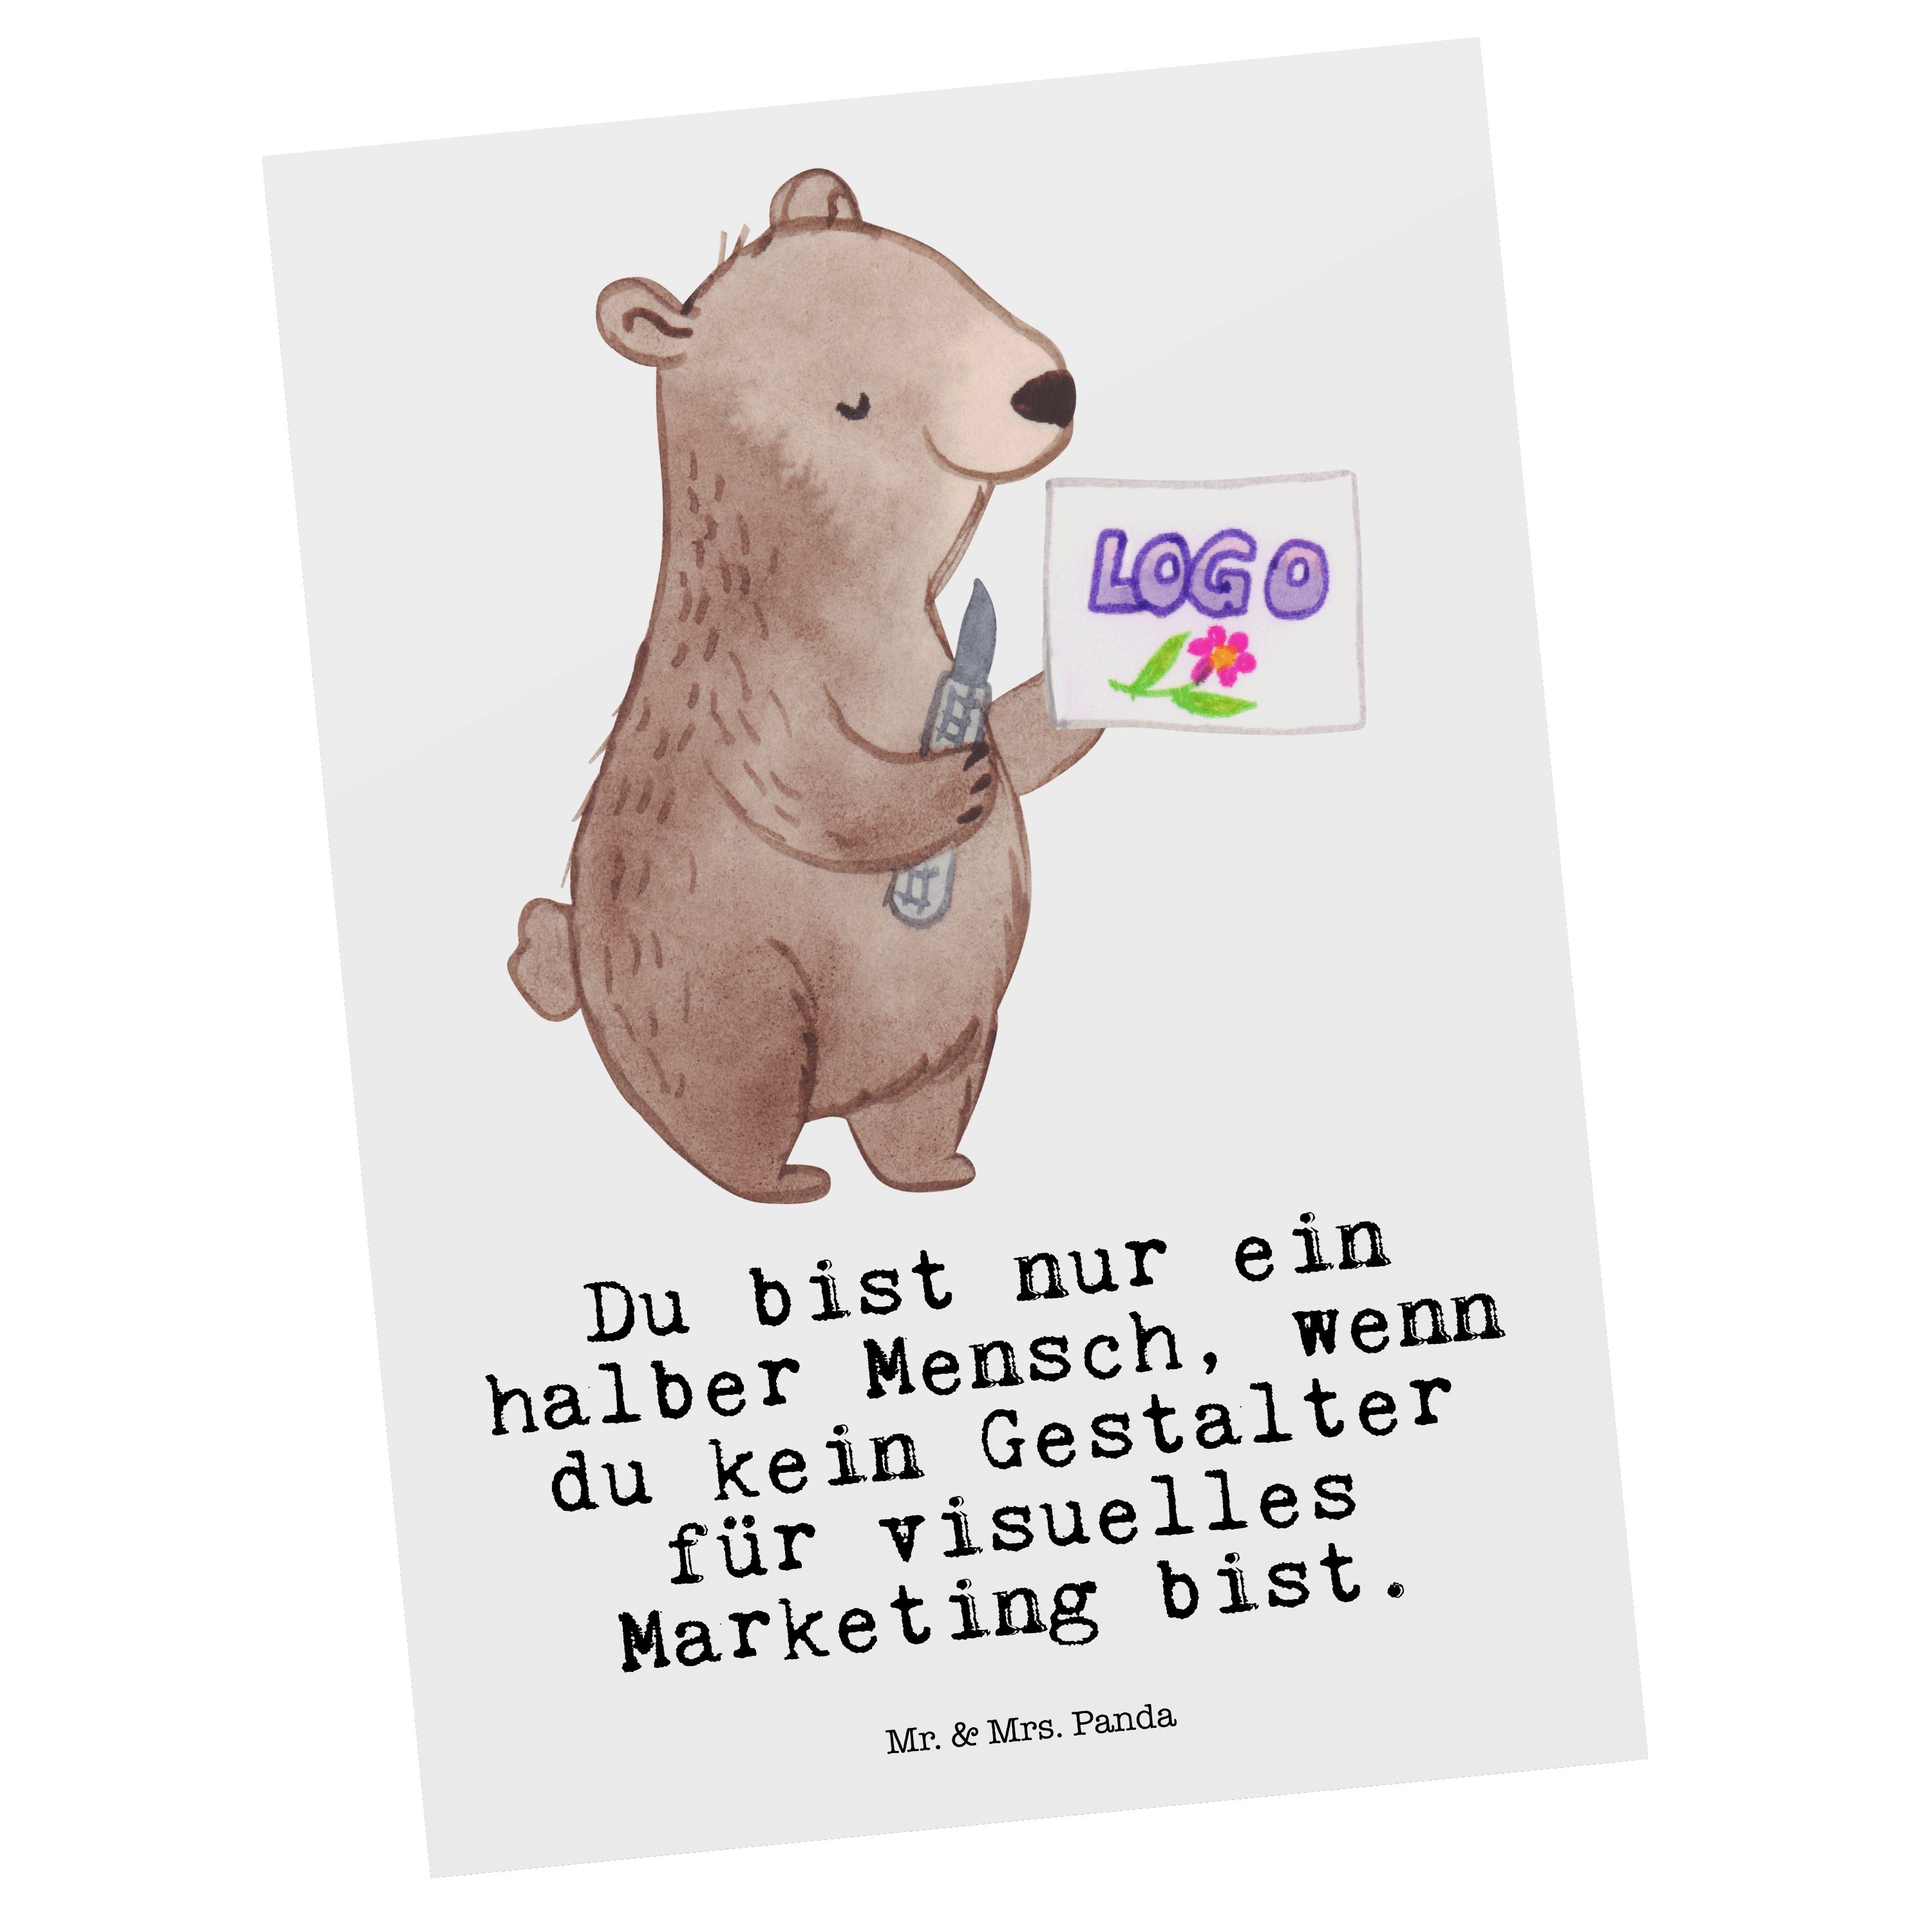 Mr. & Mrs. Panda Postkarte - Weiß Marketing mit Grußkar Herz visuelles Geschenk, Gestalter - für